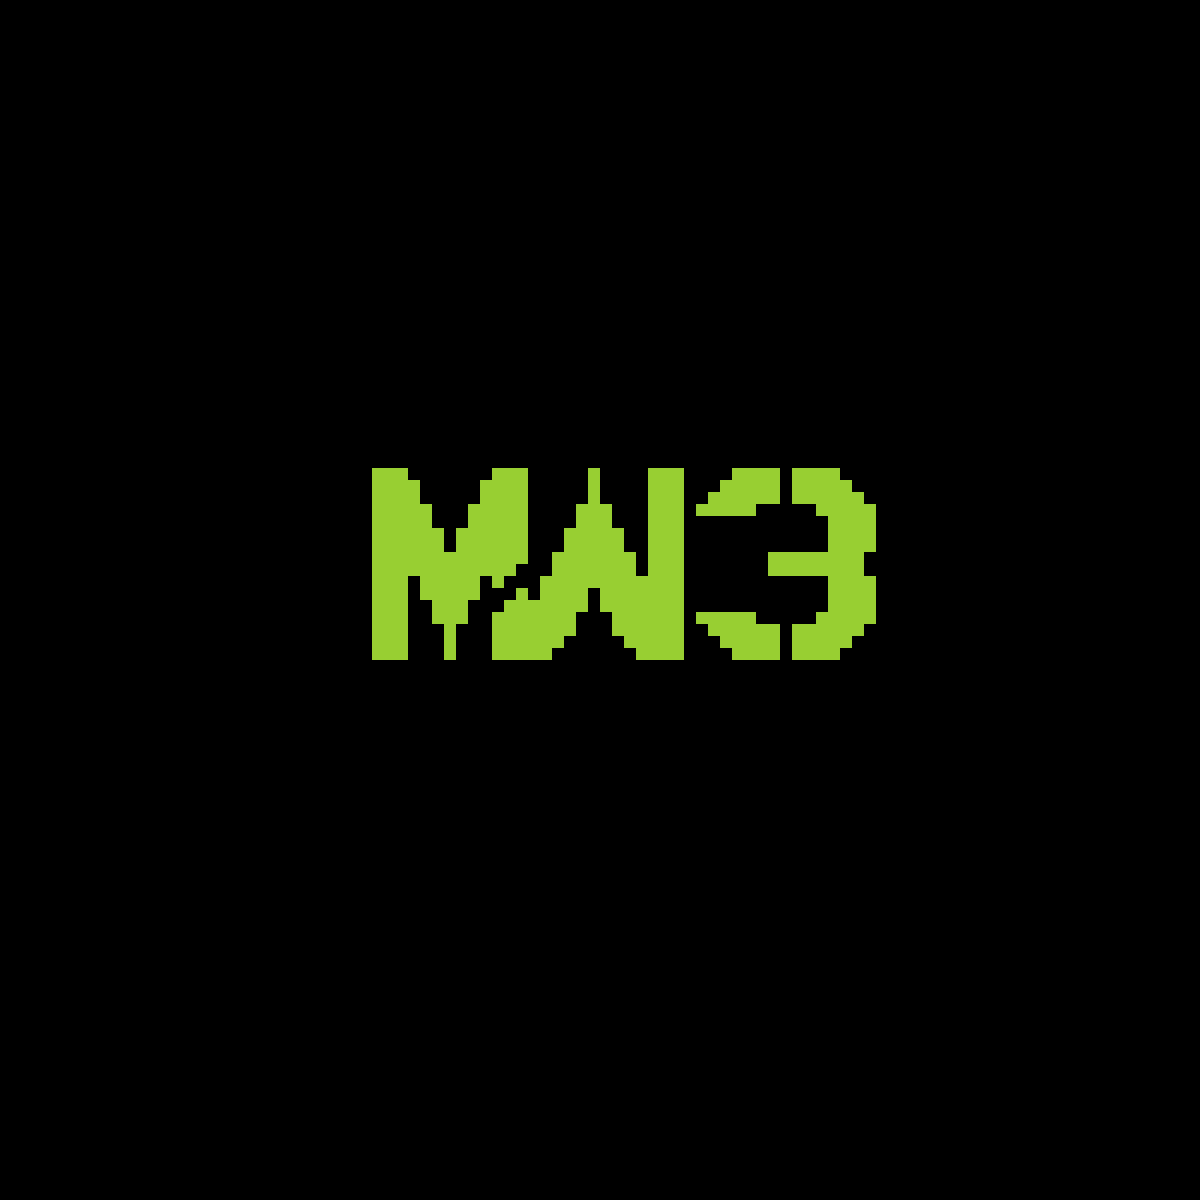 MW3 Logo - Pixilart - MW3 logo by Toasternuke343